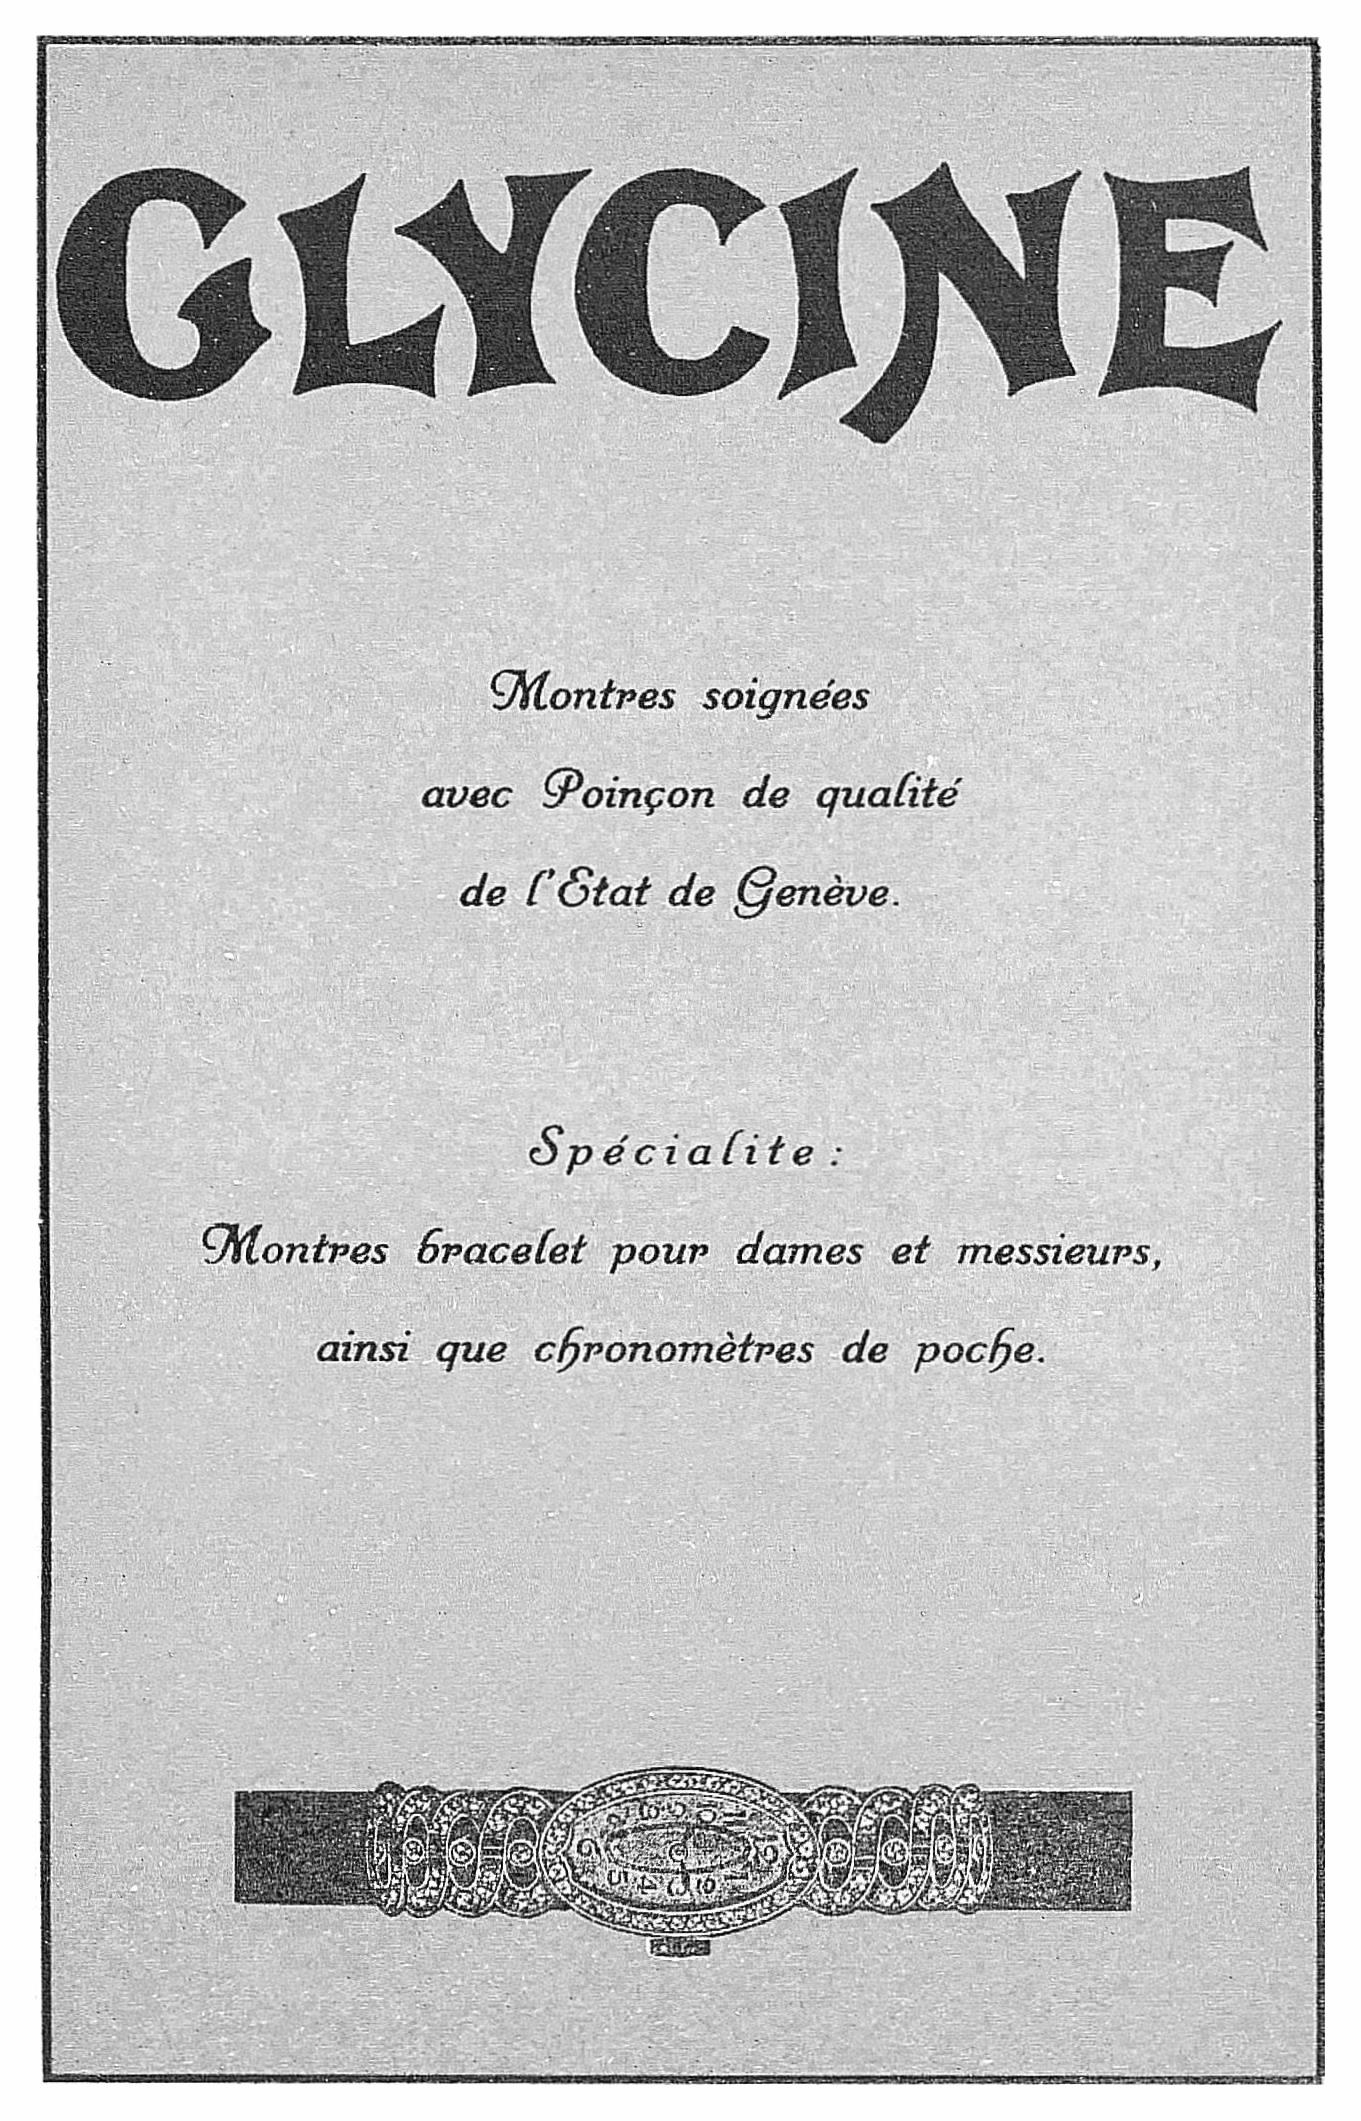 Glycine 1927 101.jpg